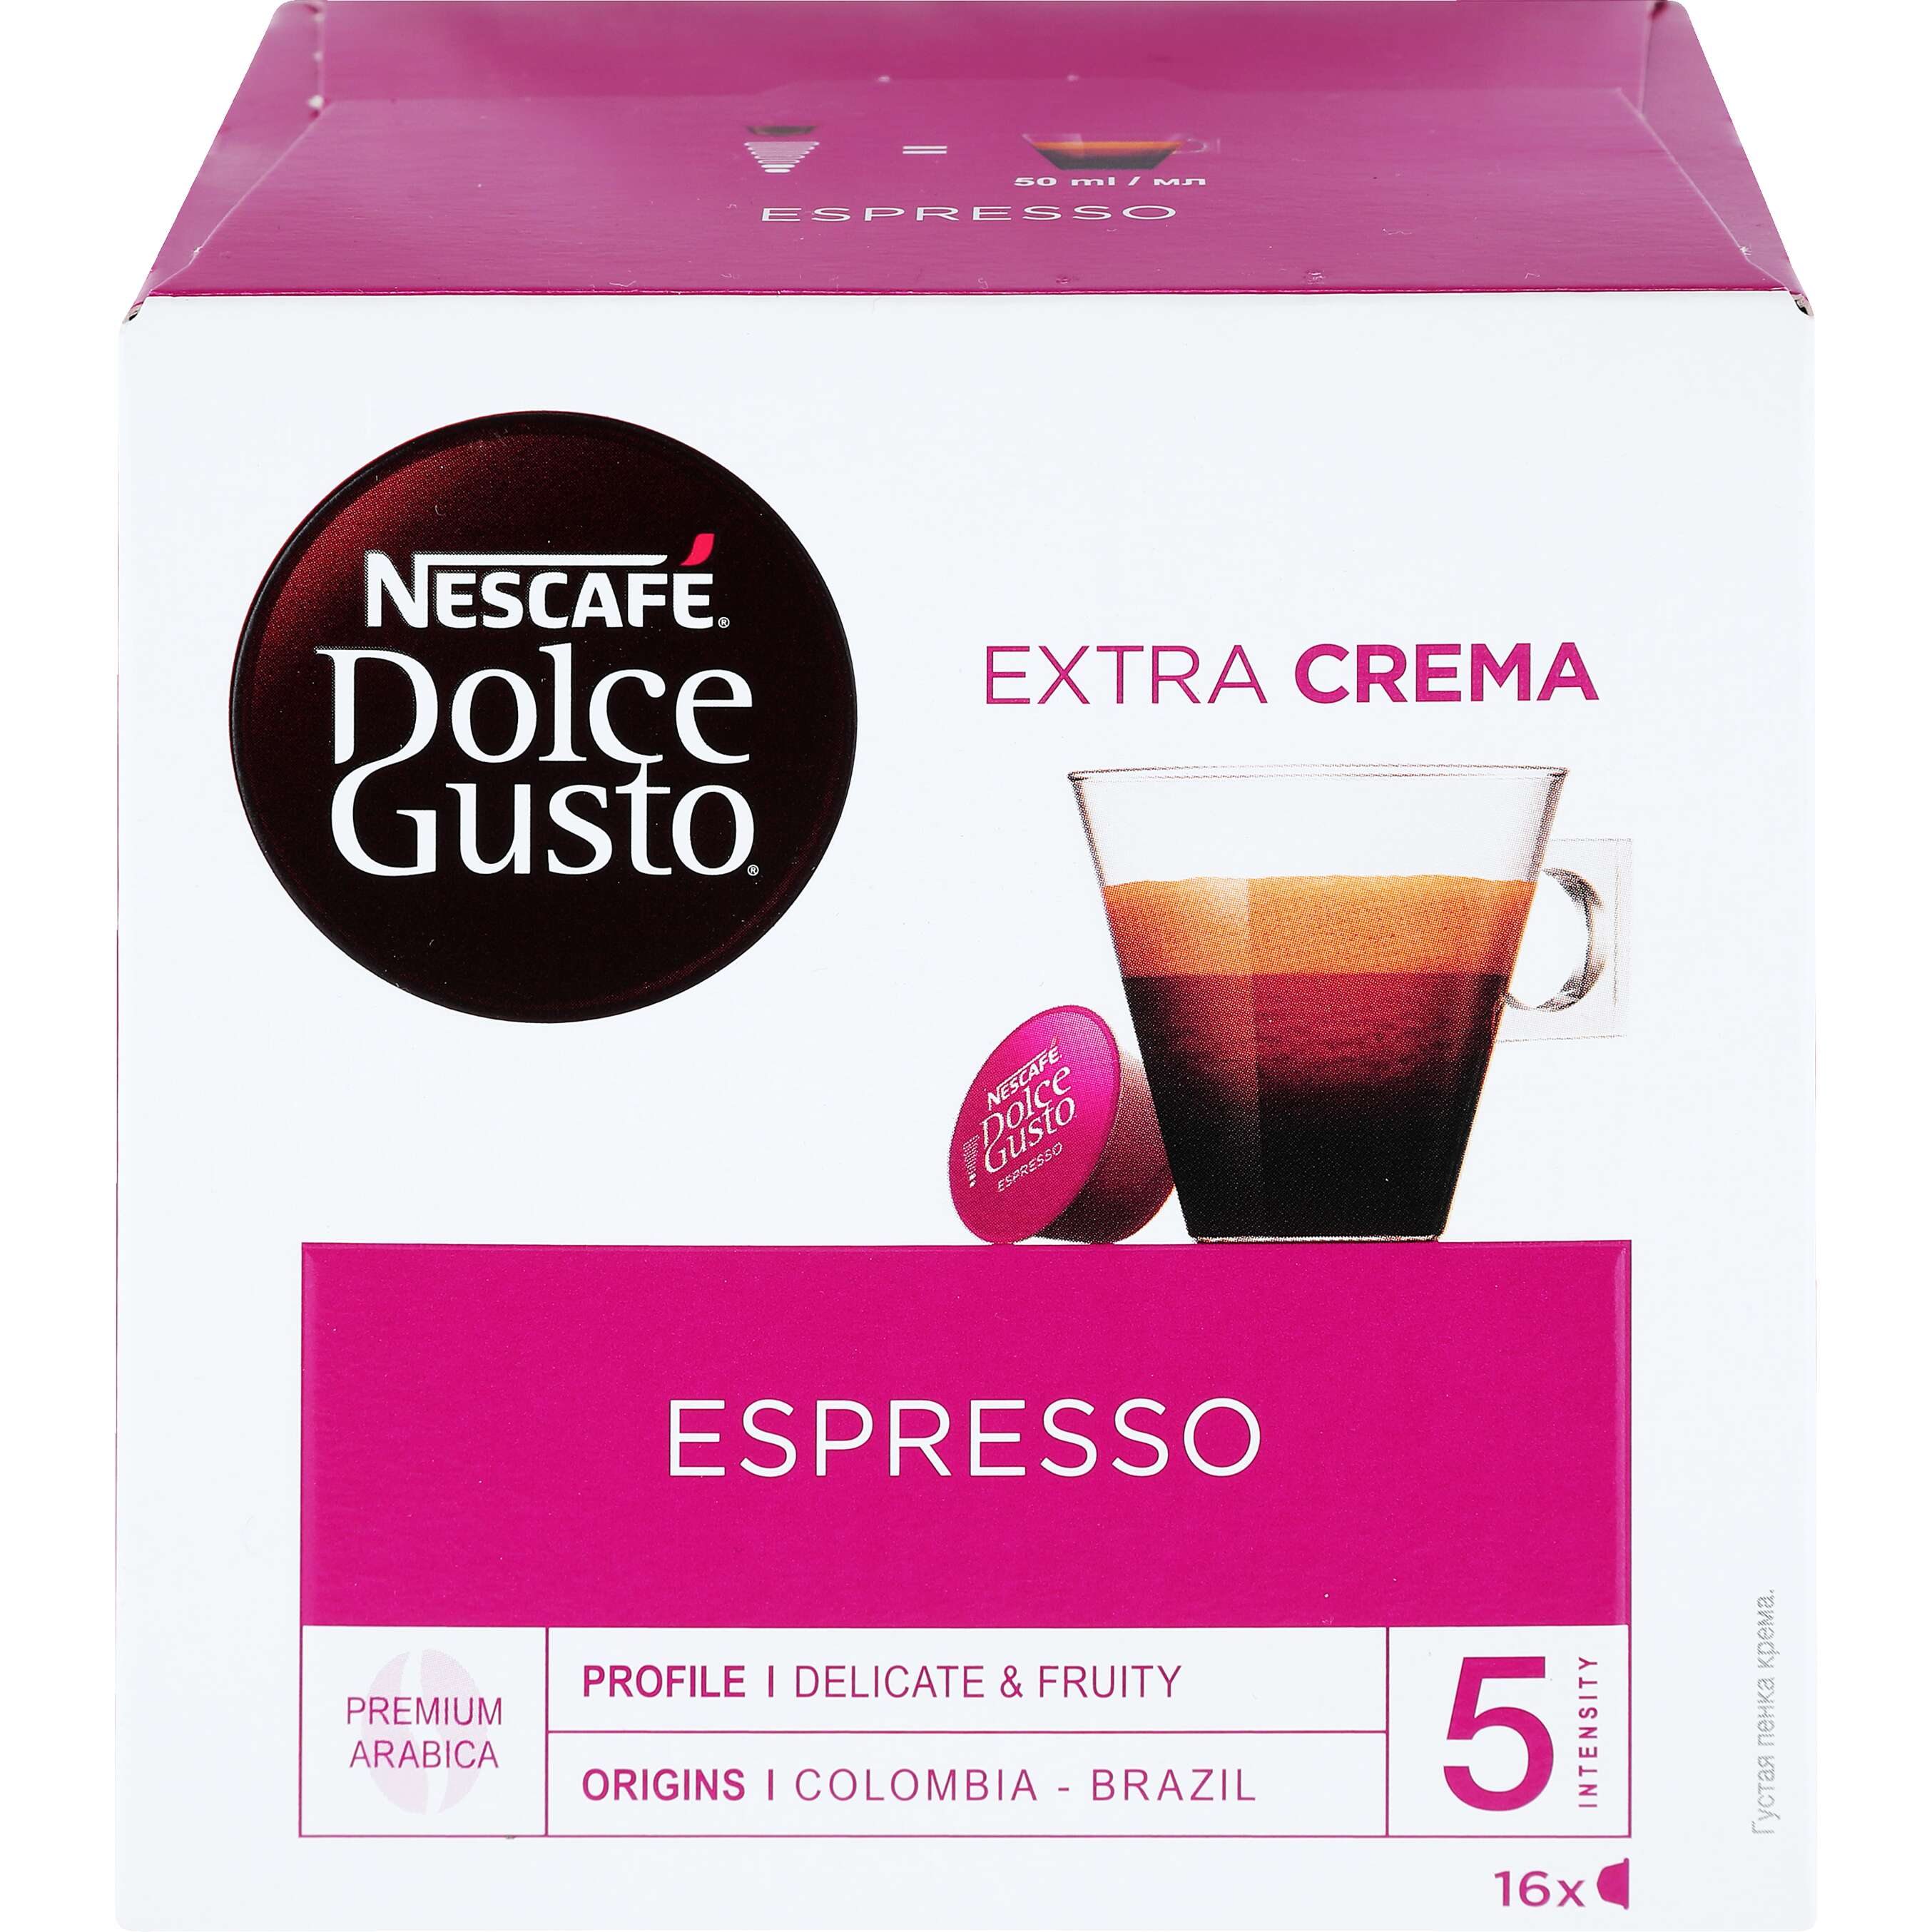 Zobrazit nabídku Dolce Gusto Kávové kapsle Espresso